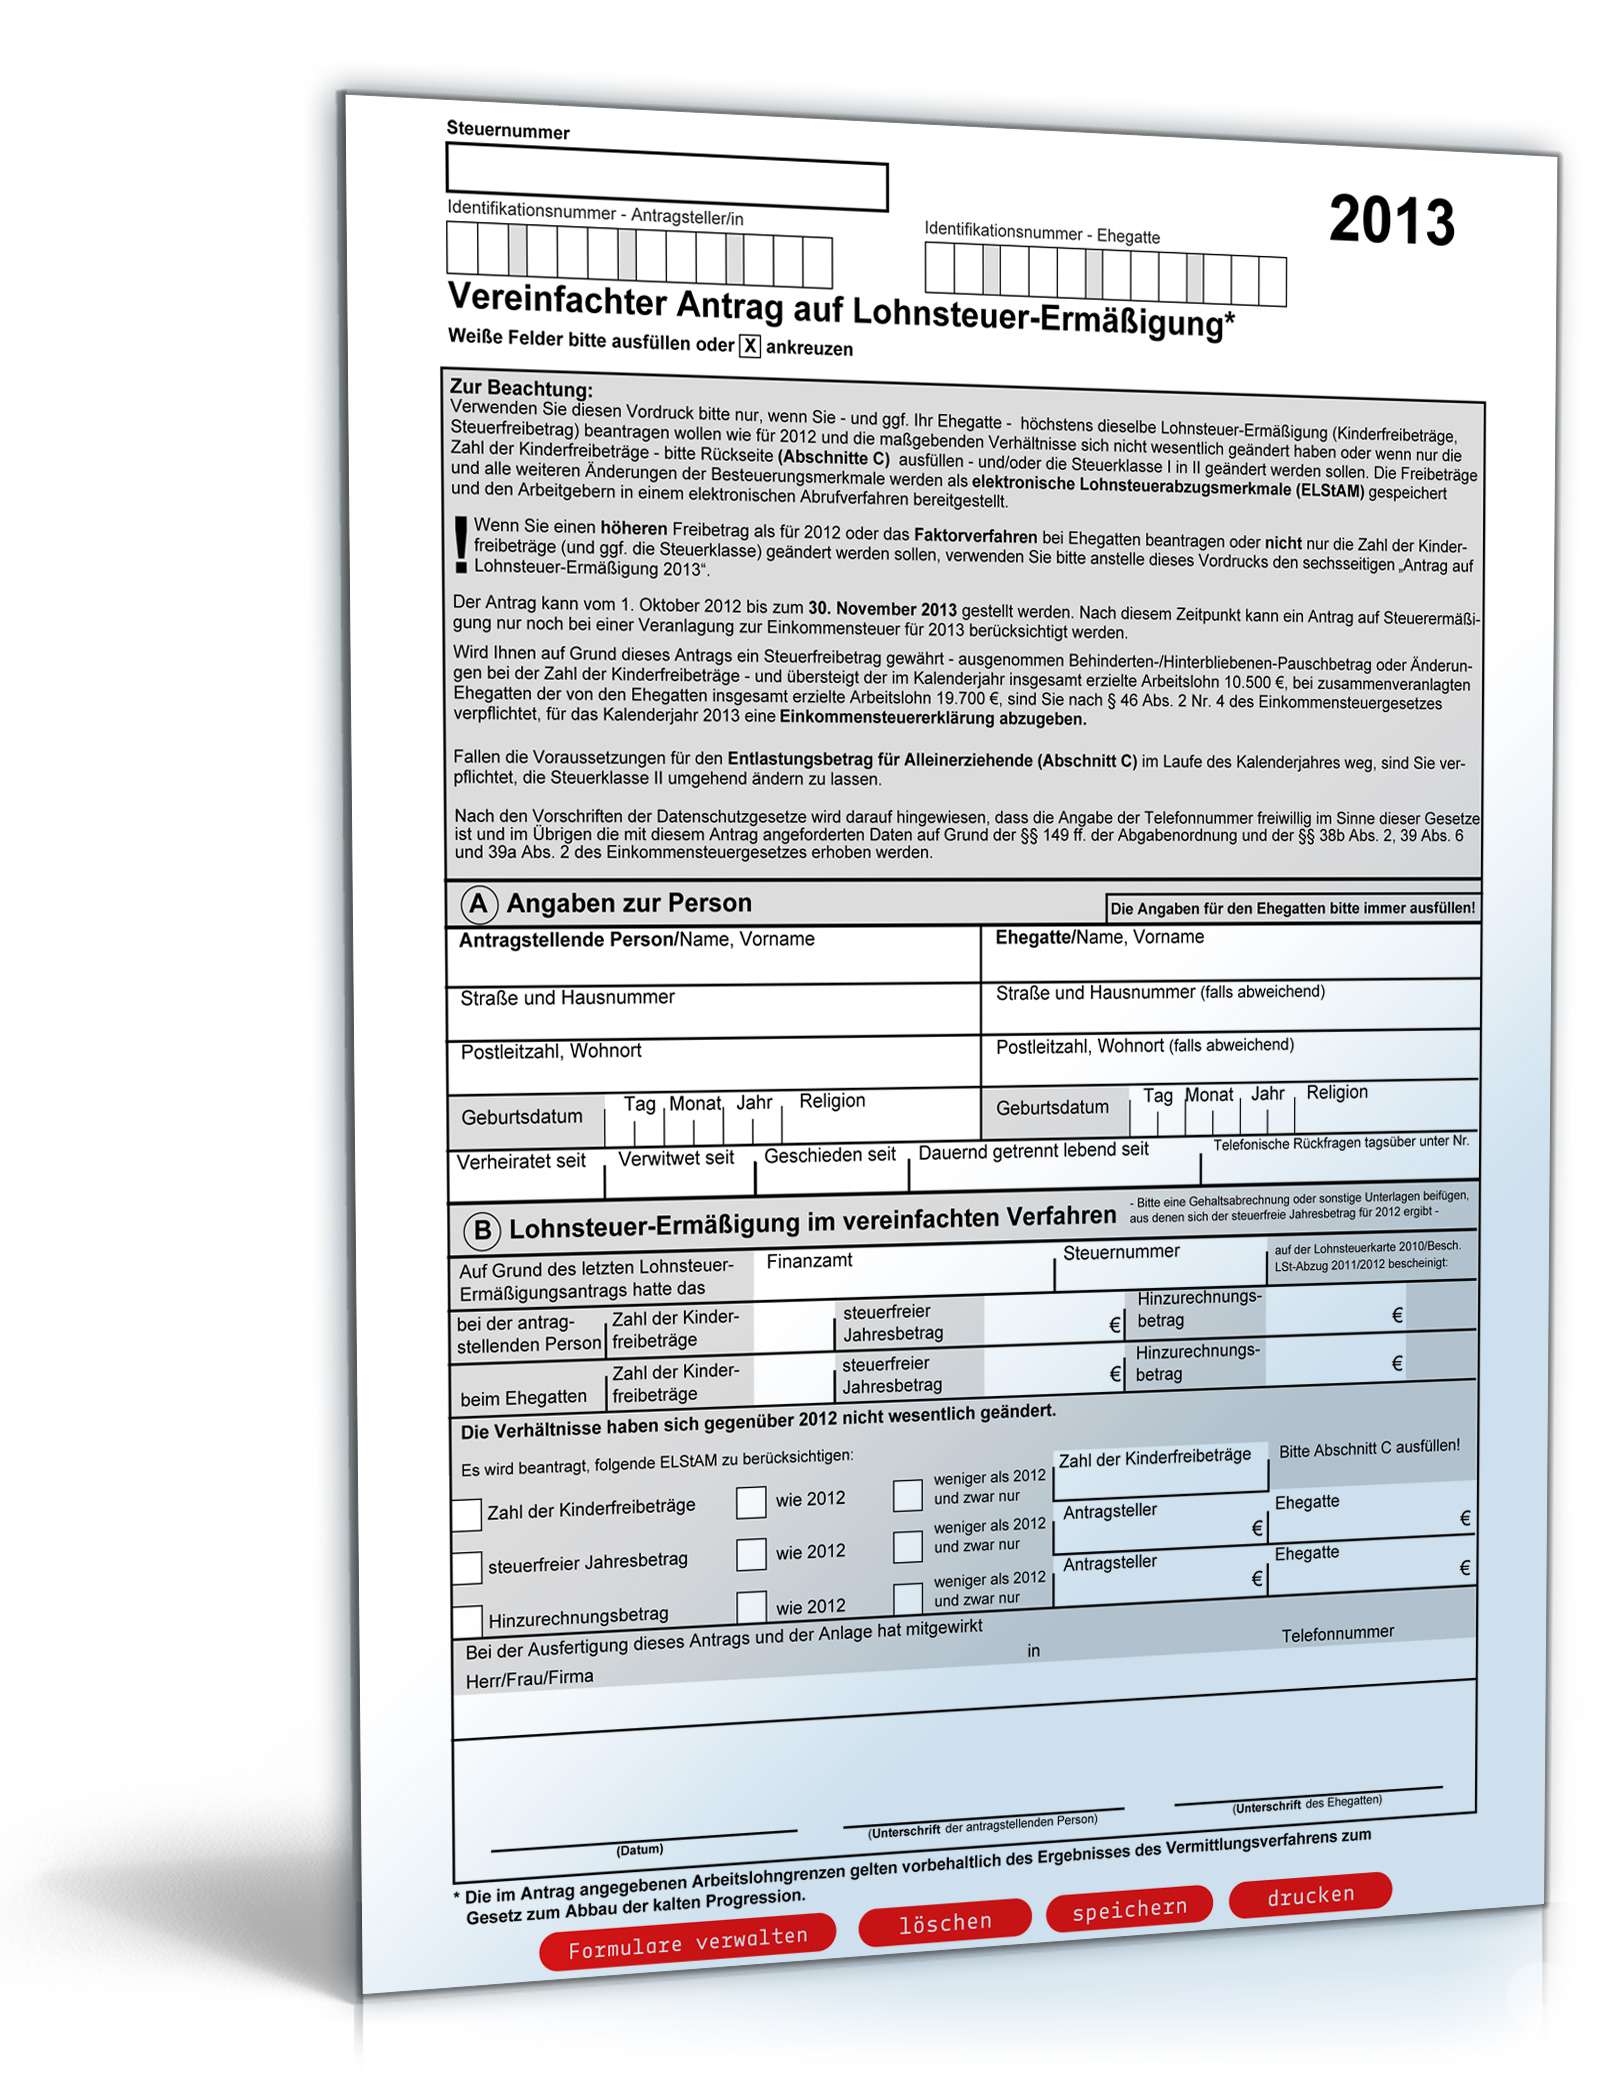 Hauptbild des Produkts: Vereinfachter Antrag auf Lohnsteuer-Ermäßigung 2013